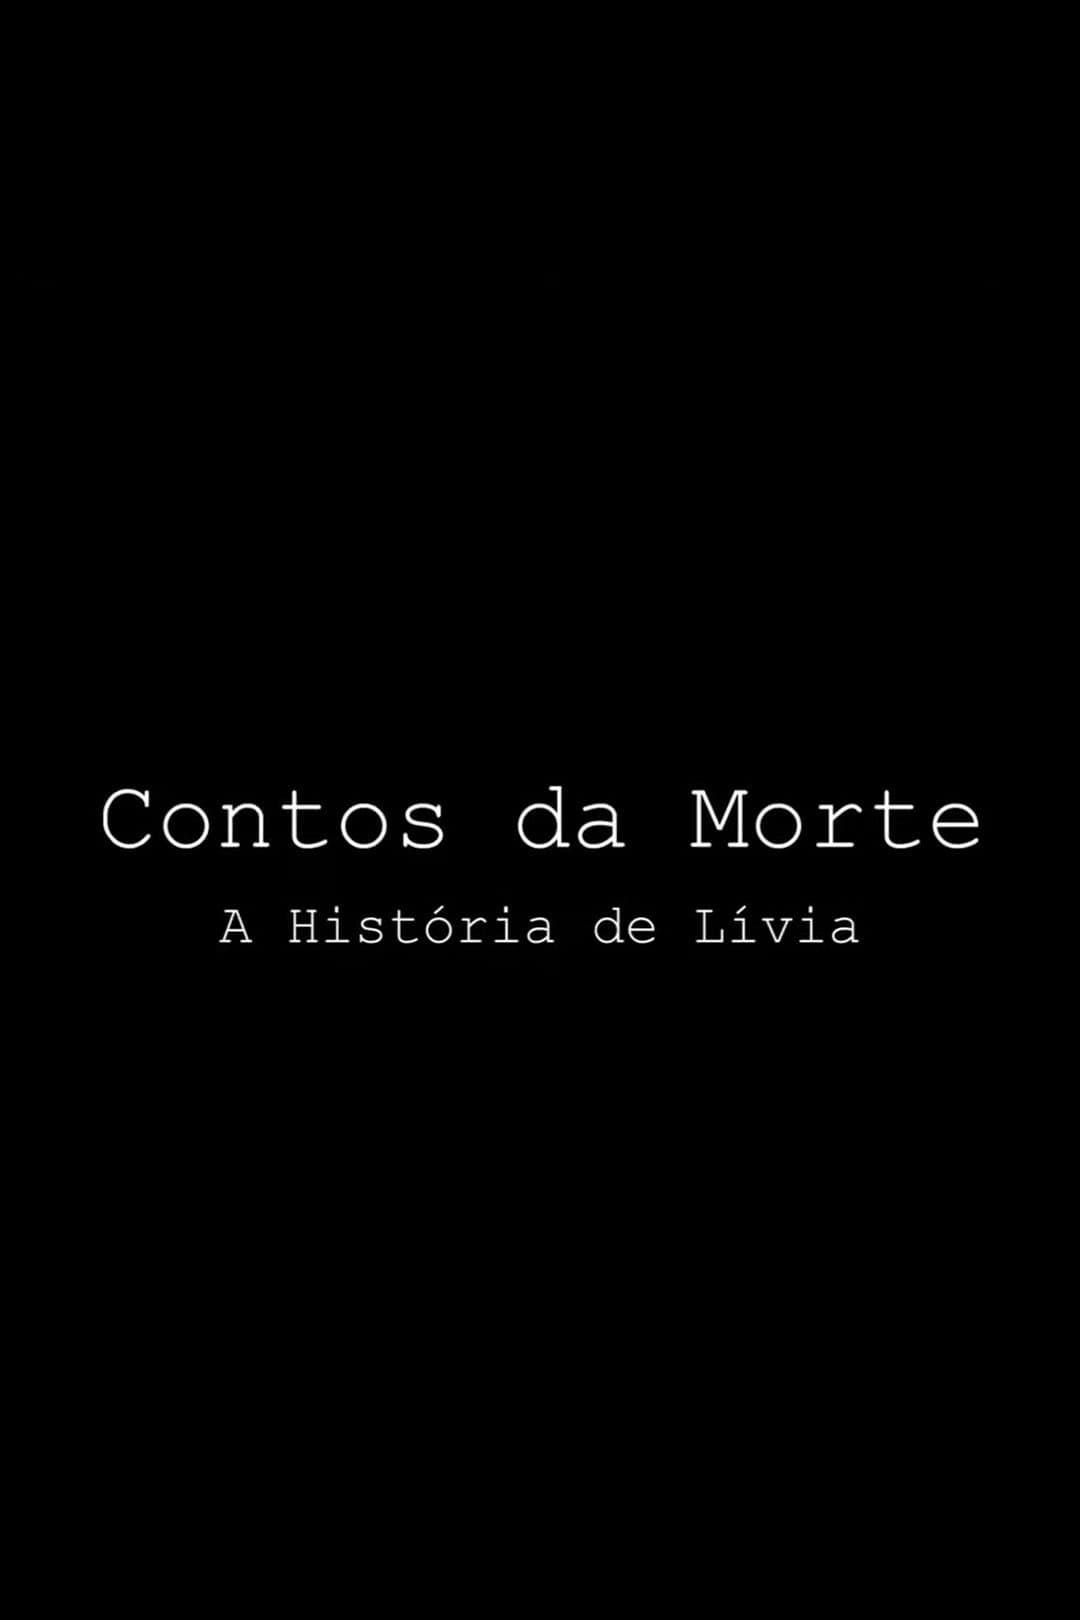 Contos da Morte - A História de Lívia poster